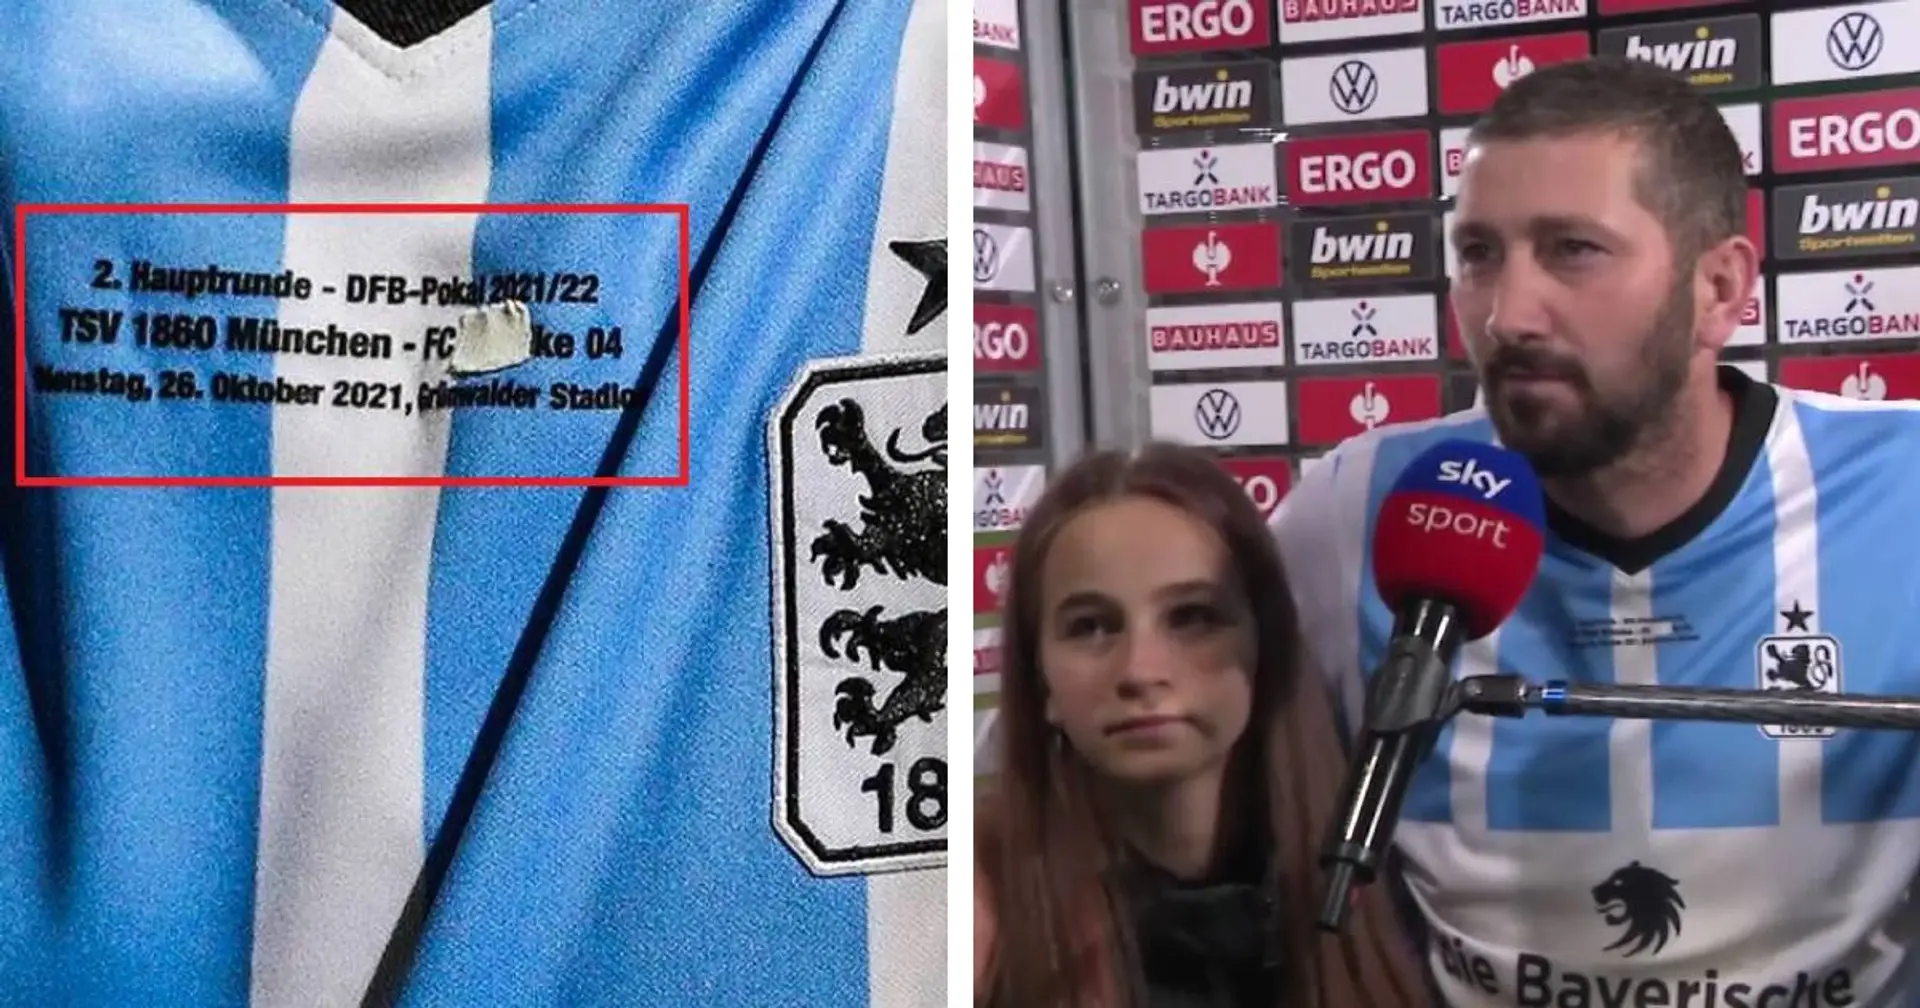 Kurios: 1860-Stürmer Mölders erklärt, warum er den Schriftzug "FC Schalke 04" auf seinem Trikot überklebt hat